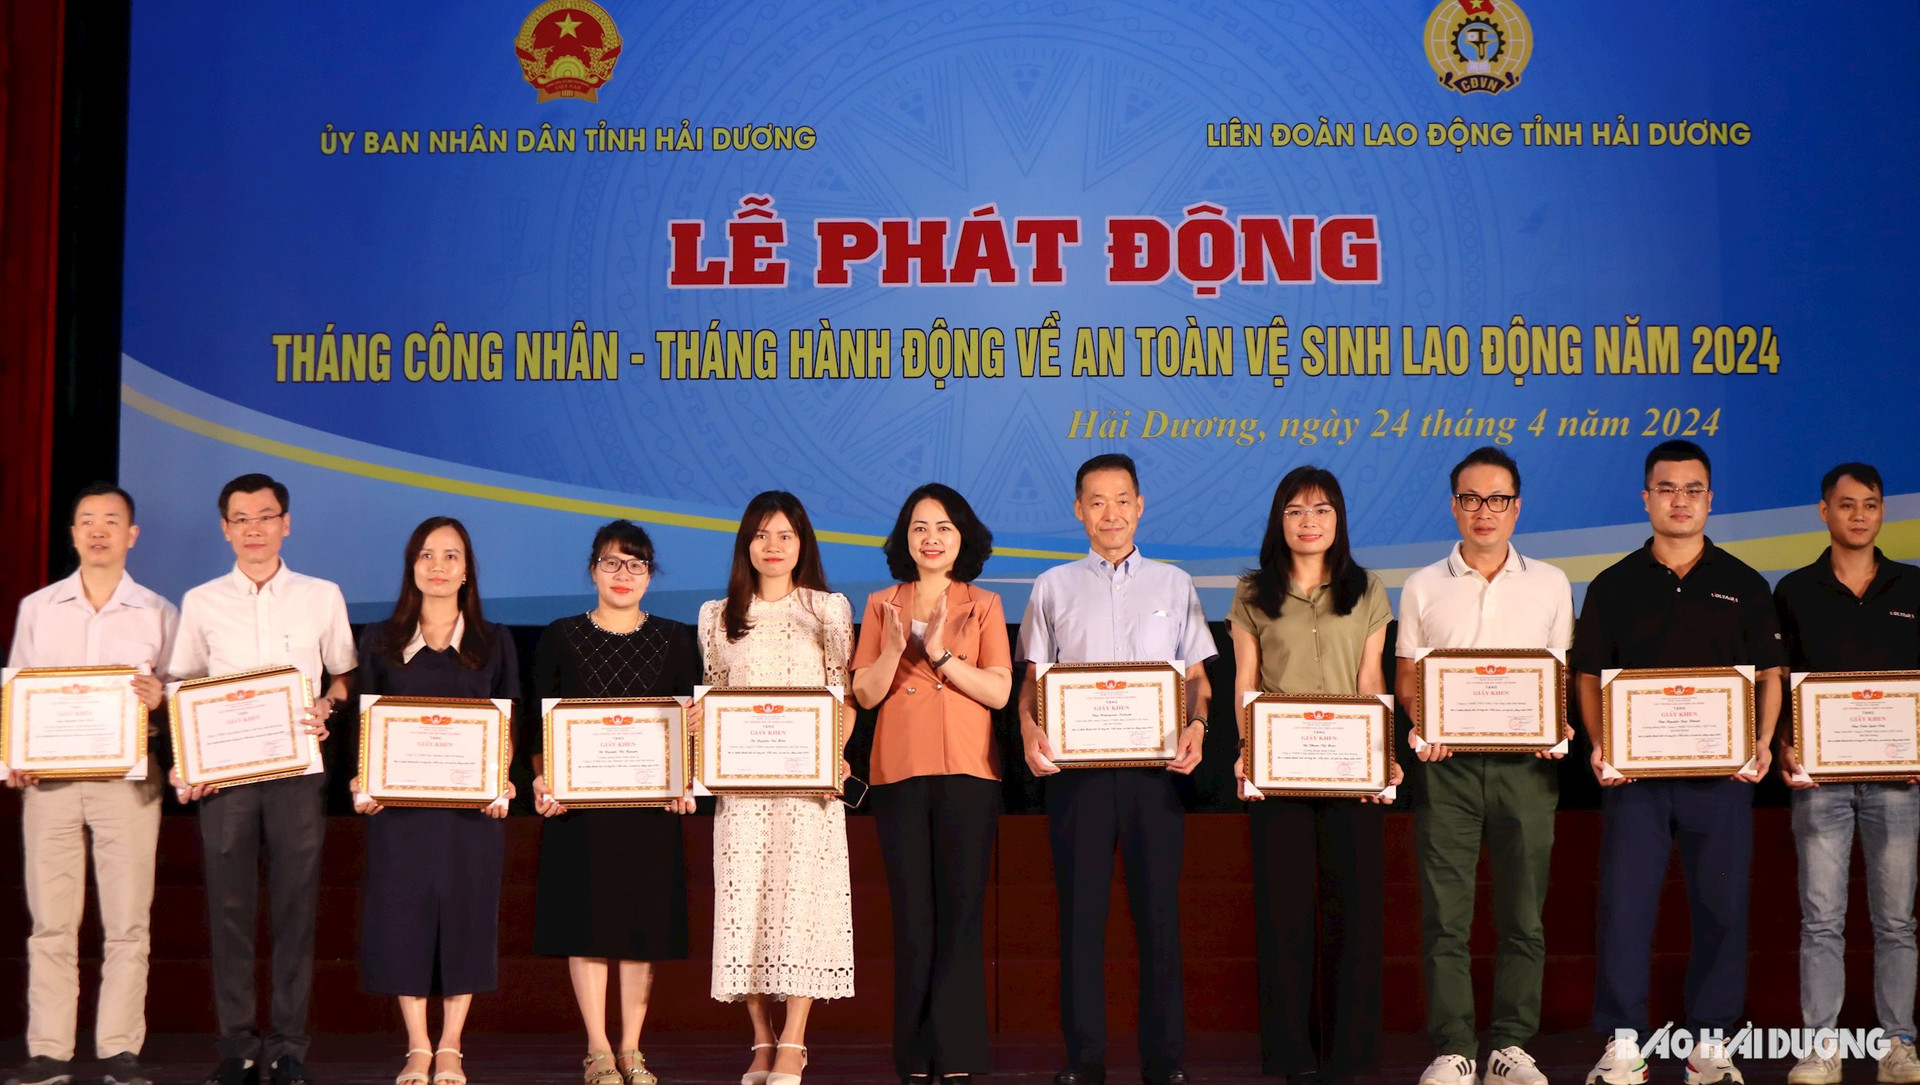 Bà Chu Thị Hạnh, Phó Cục trưởng Cục An toàn lao động (Bộ Lao động, Thương binh và Xã hội) trao giấy khen cho các tập thể, cá nhân có thành tích xuất sắc về công tác an toàn lao động năm 2023